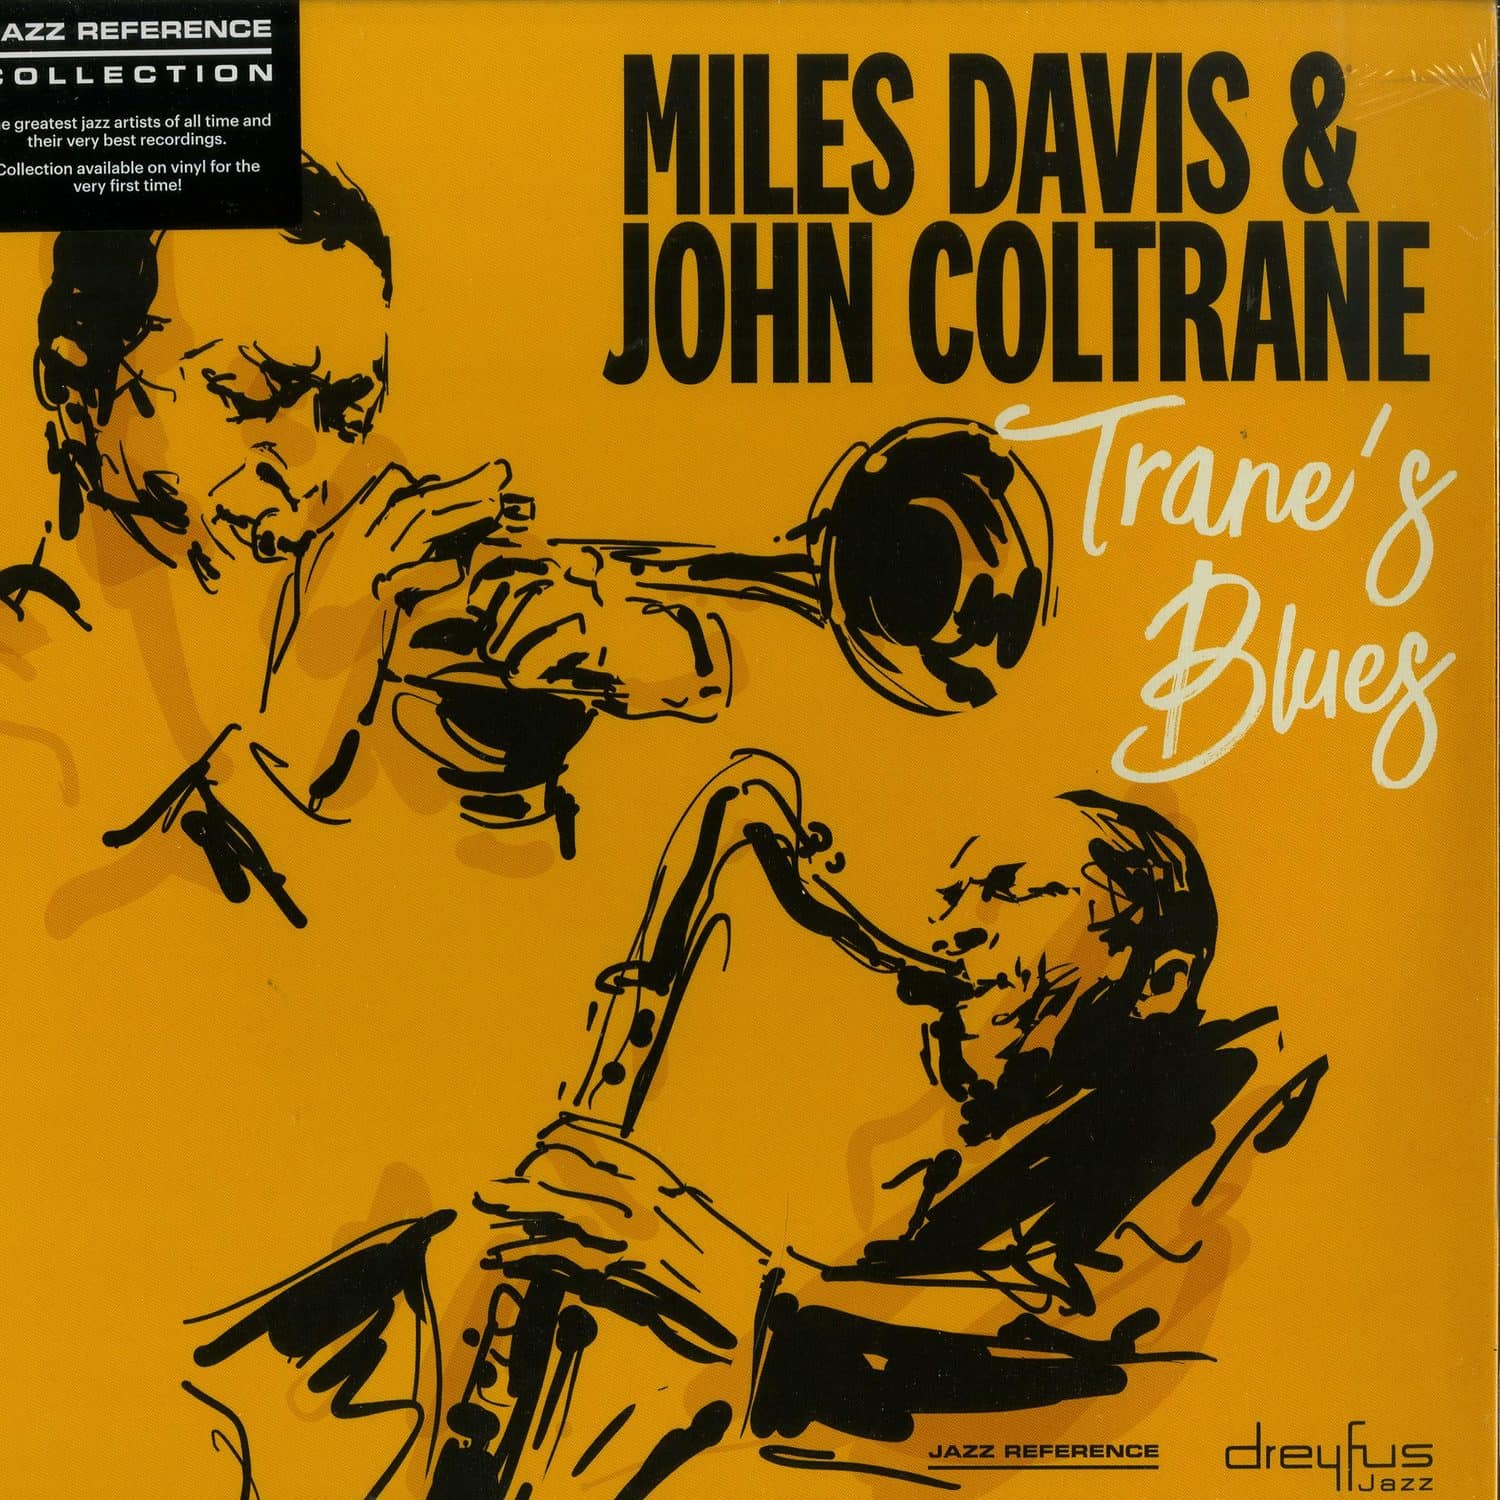 Miles Davis & John Coltrane - TRANES BLUES 